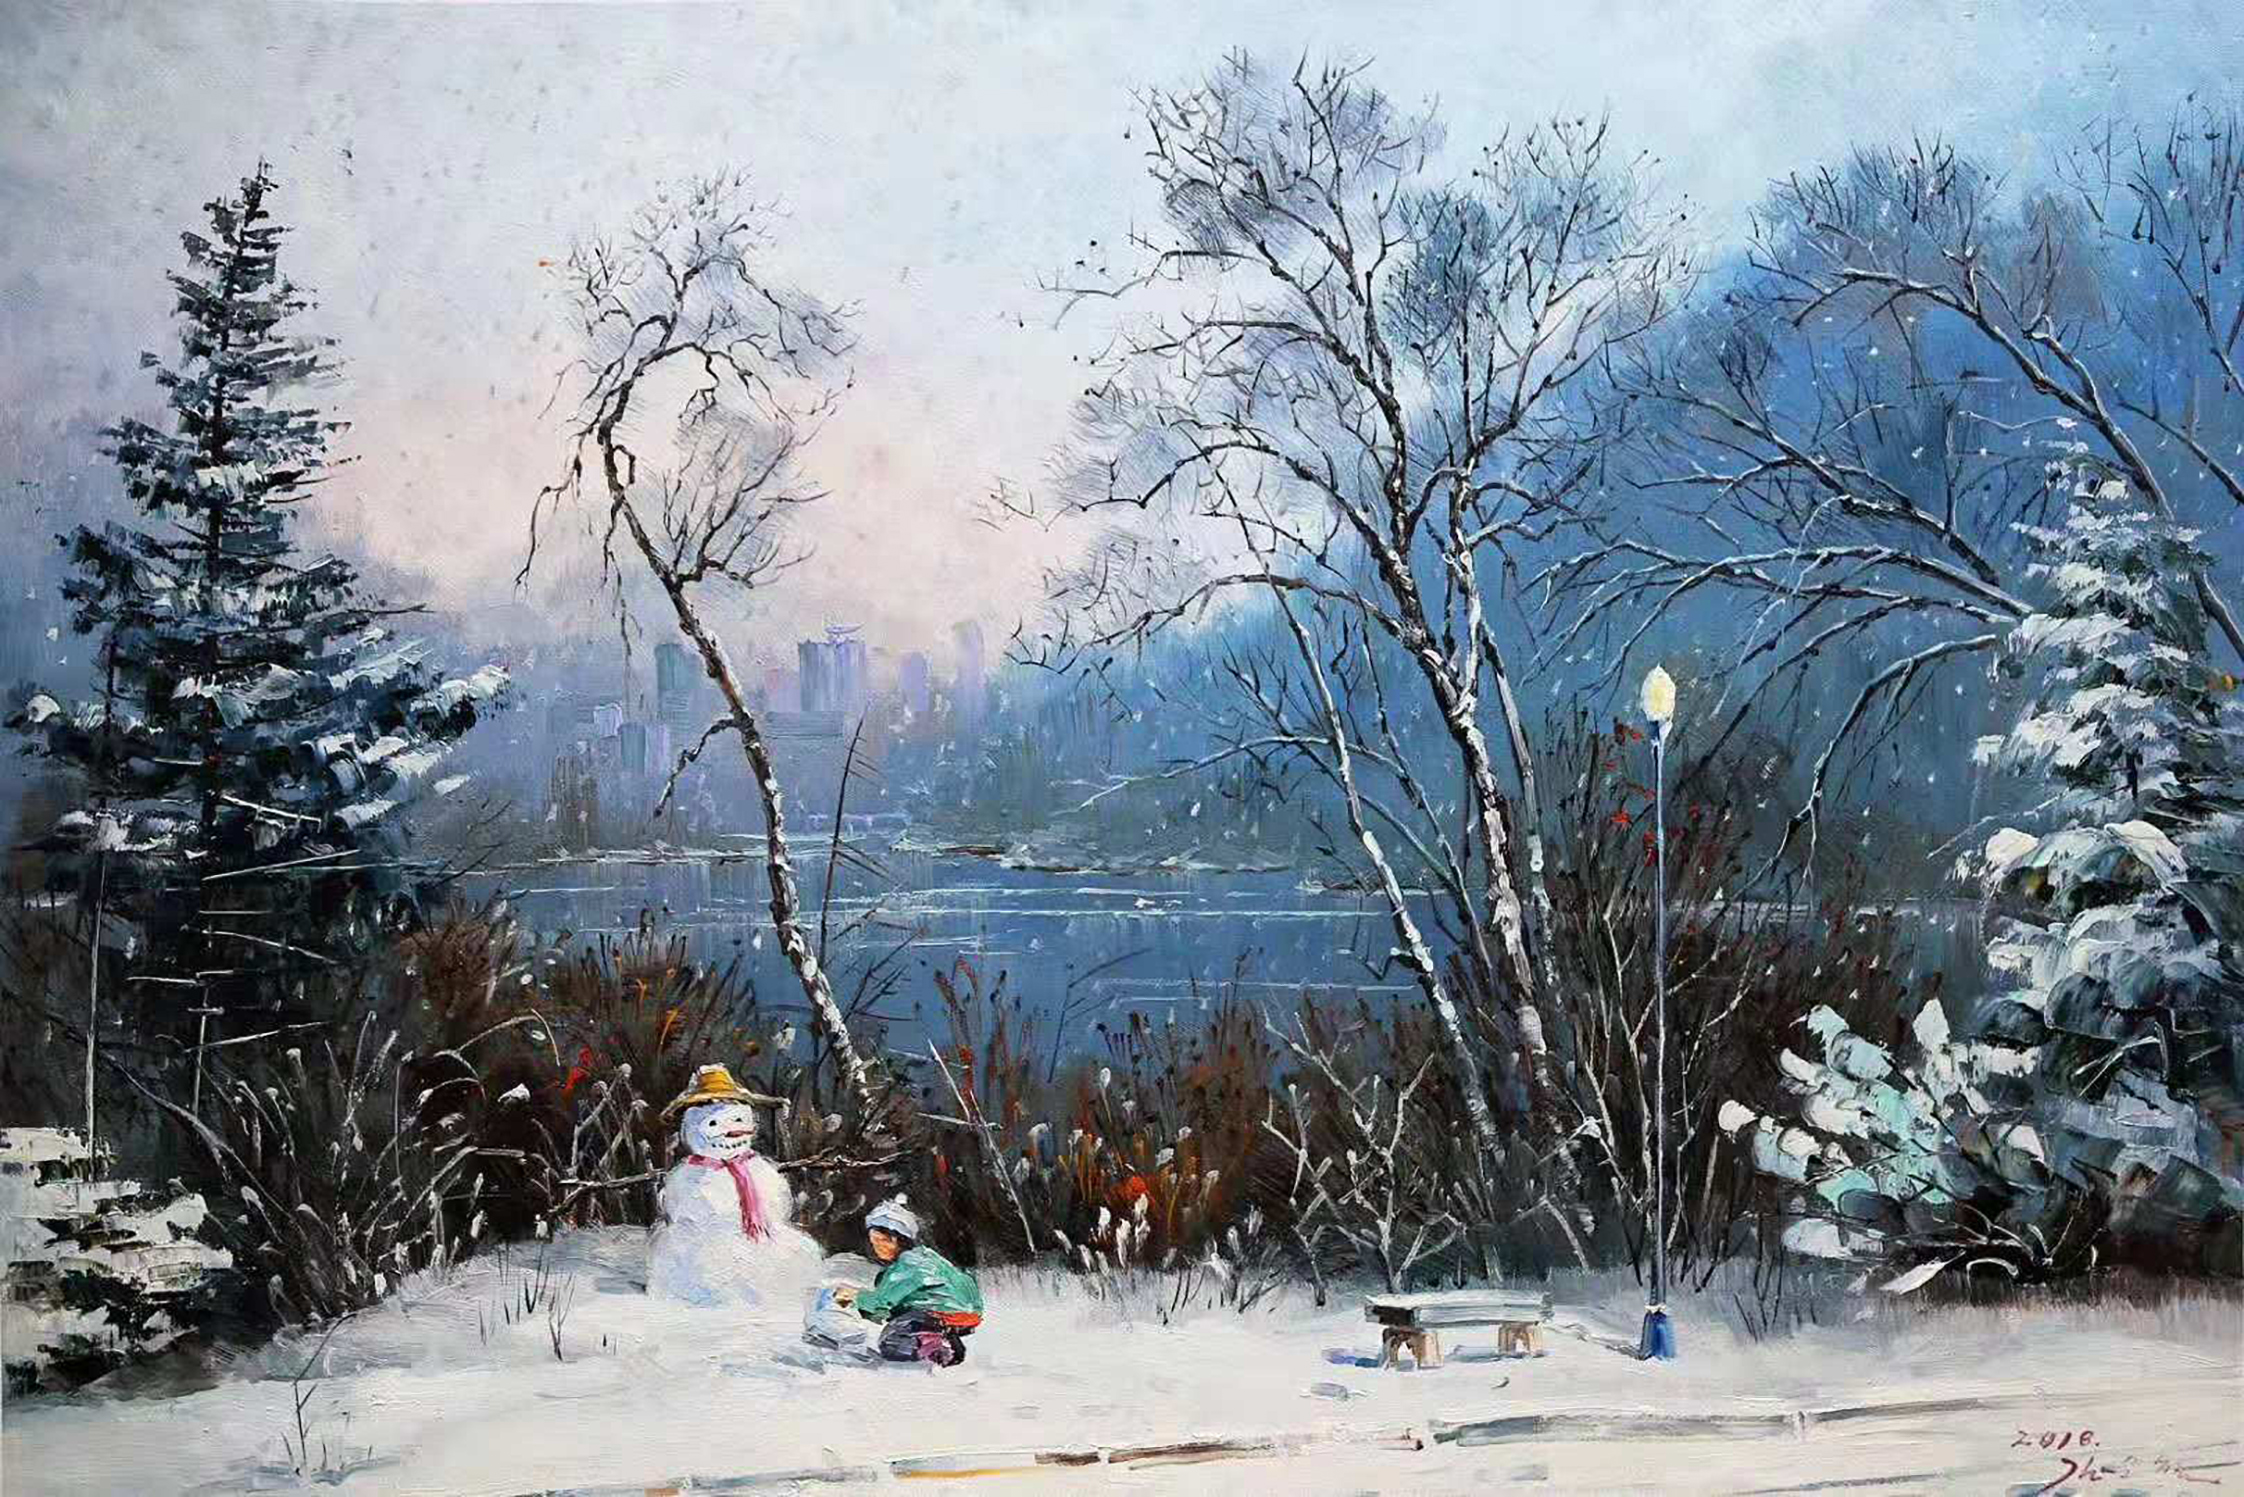 油画欣赏:画家笔下的冬天,冰雪风景是这样的美(一)